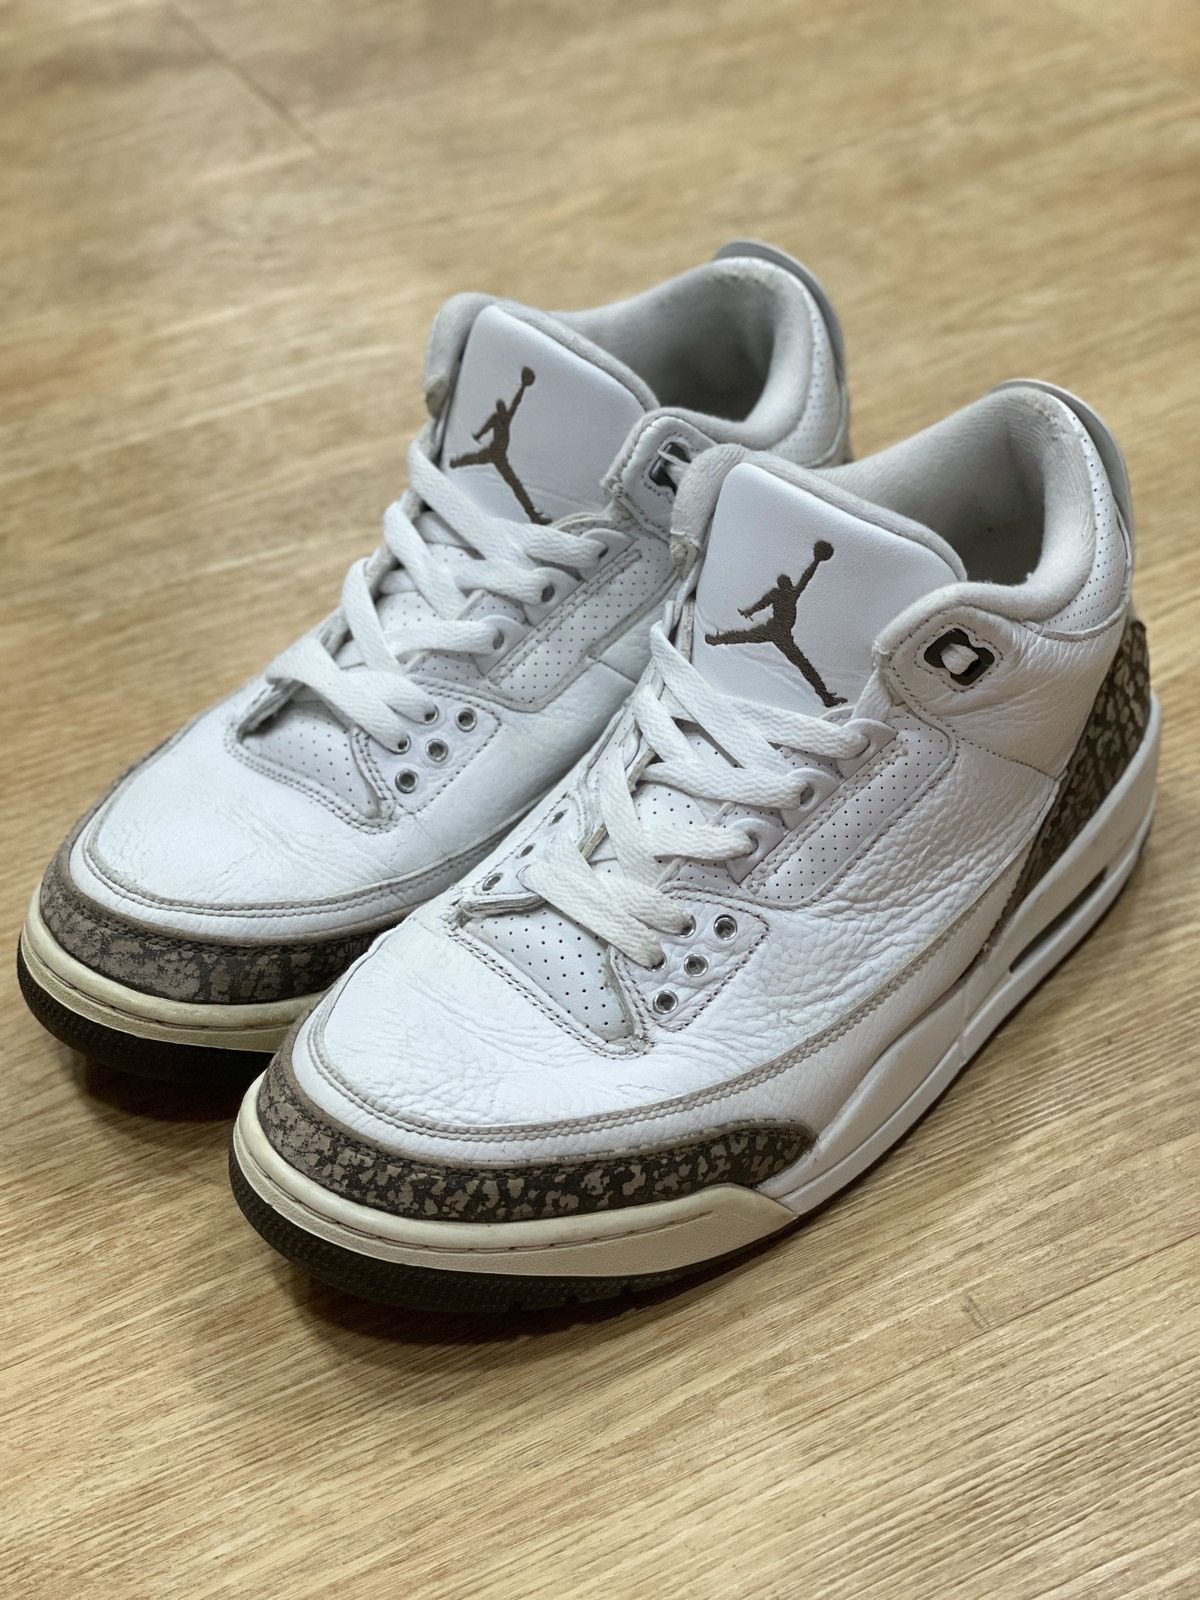 Pre-owned Jordan Nike Air Jordan 3 Mocha Retro 2018 Shoes In White